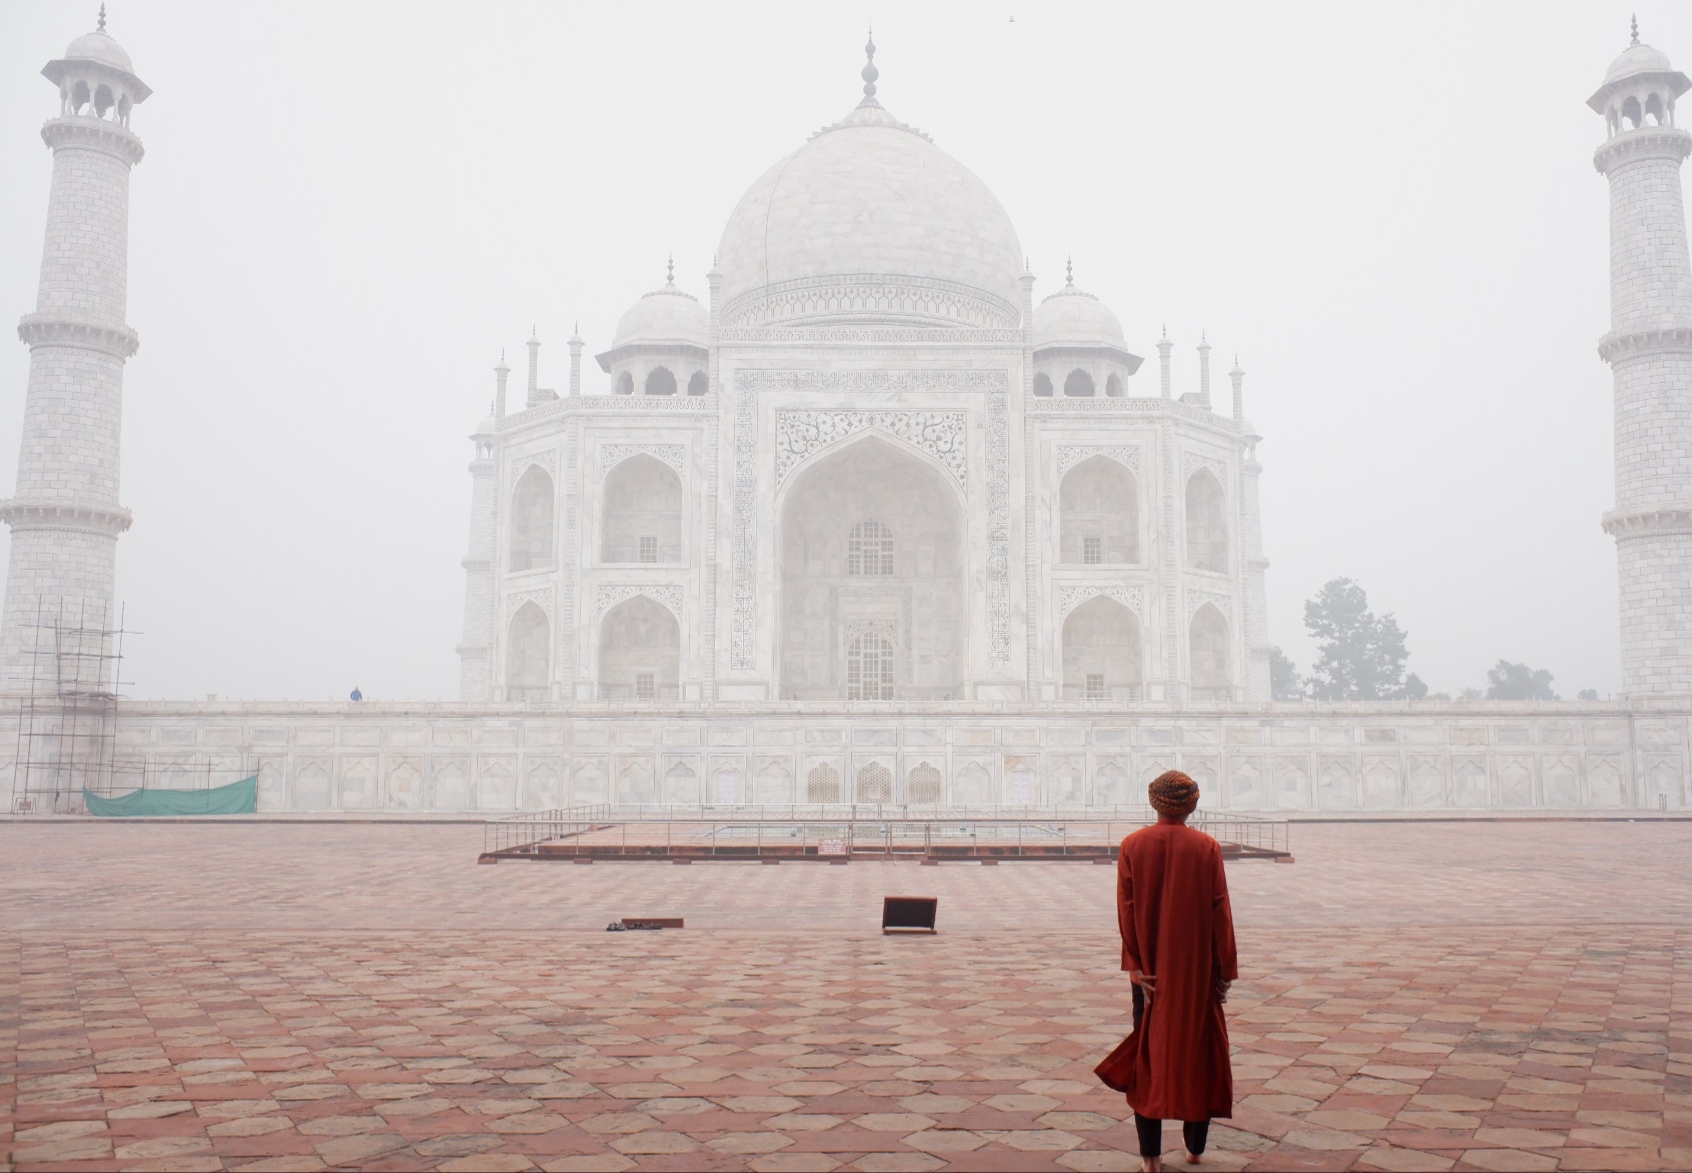 Taj Mahal nebbioso, fascino e mistero...